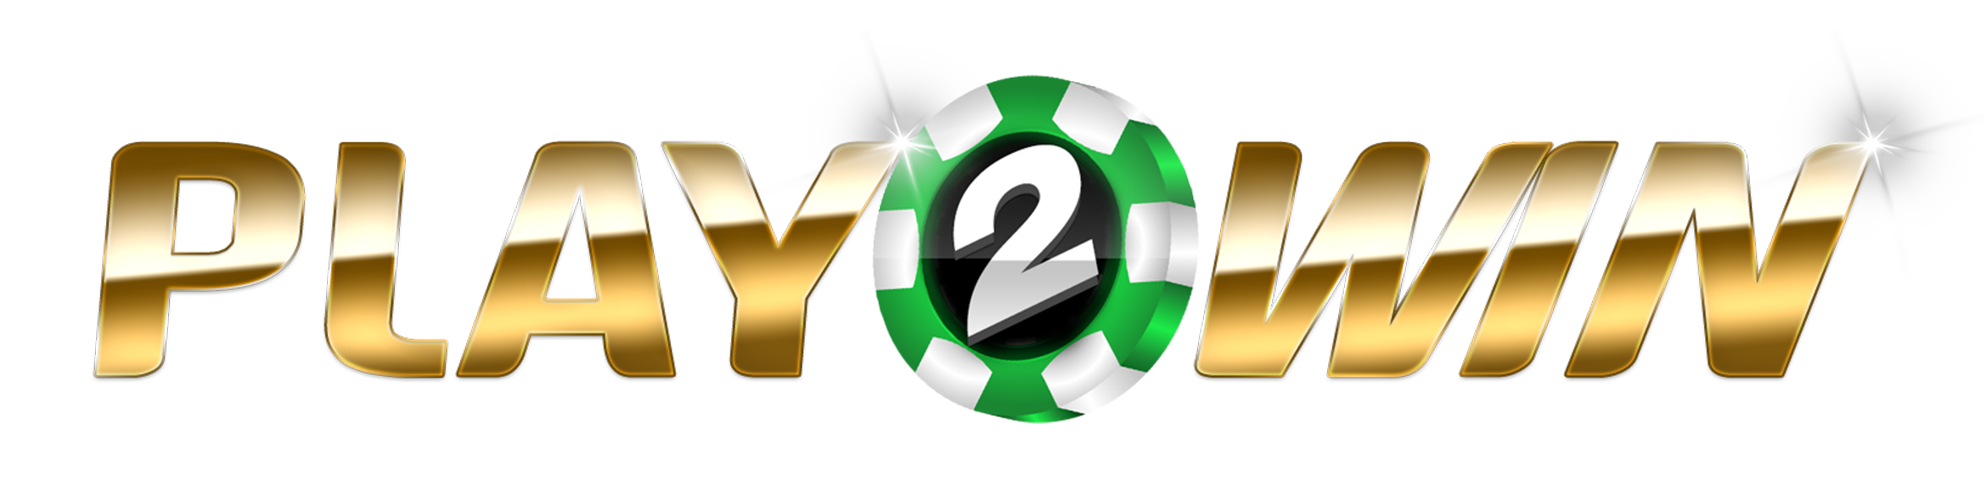 play2win-logo